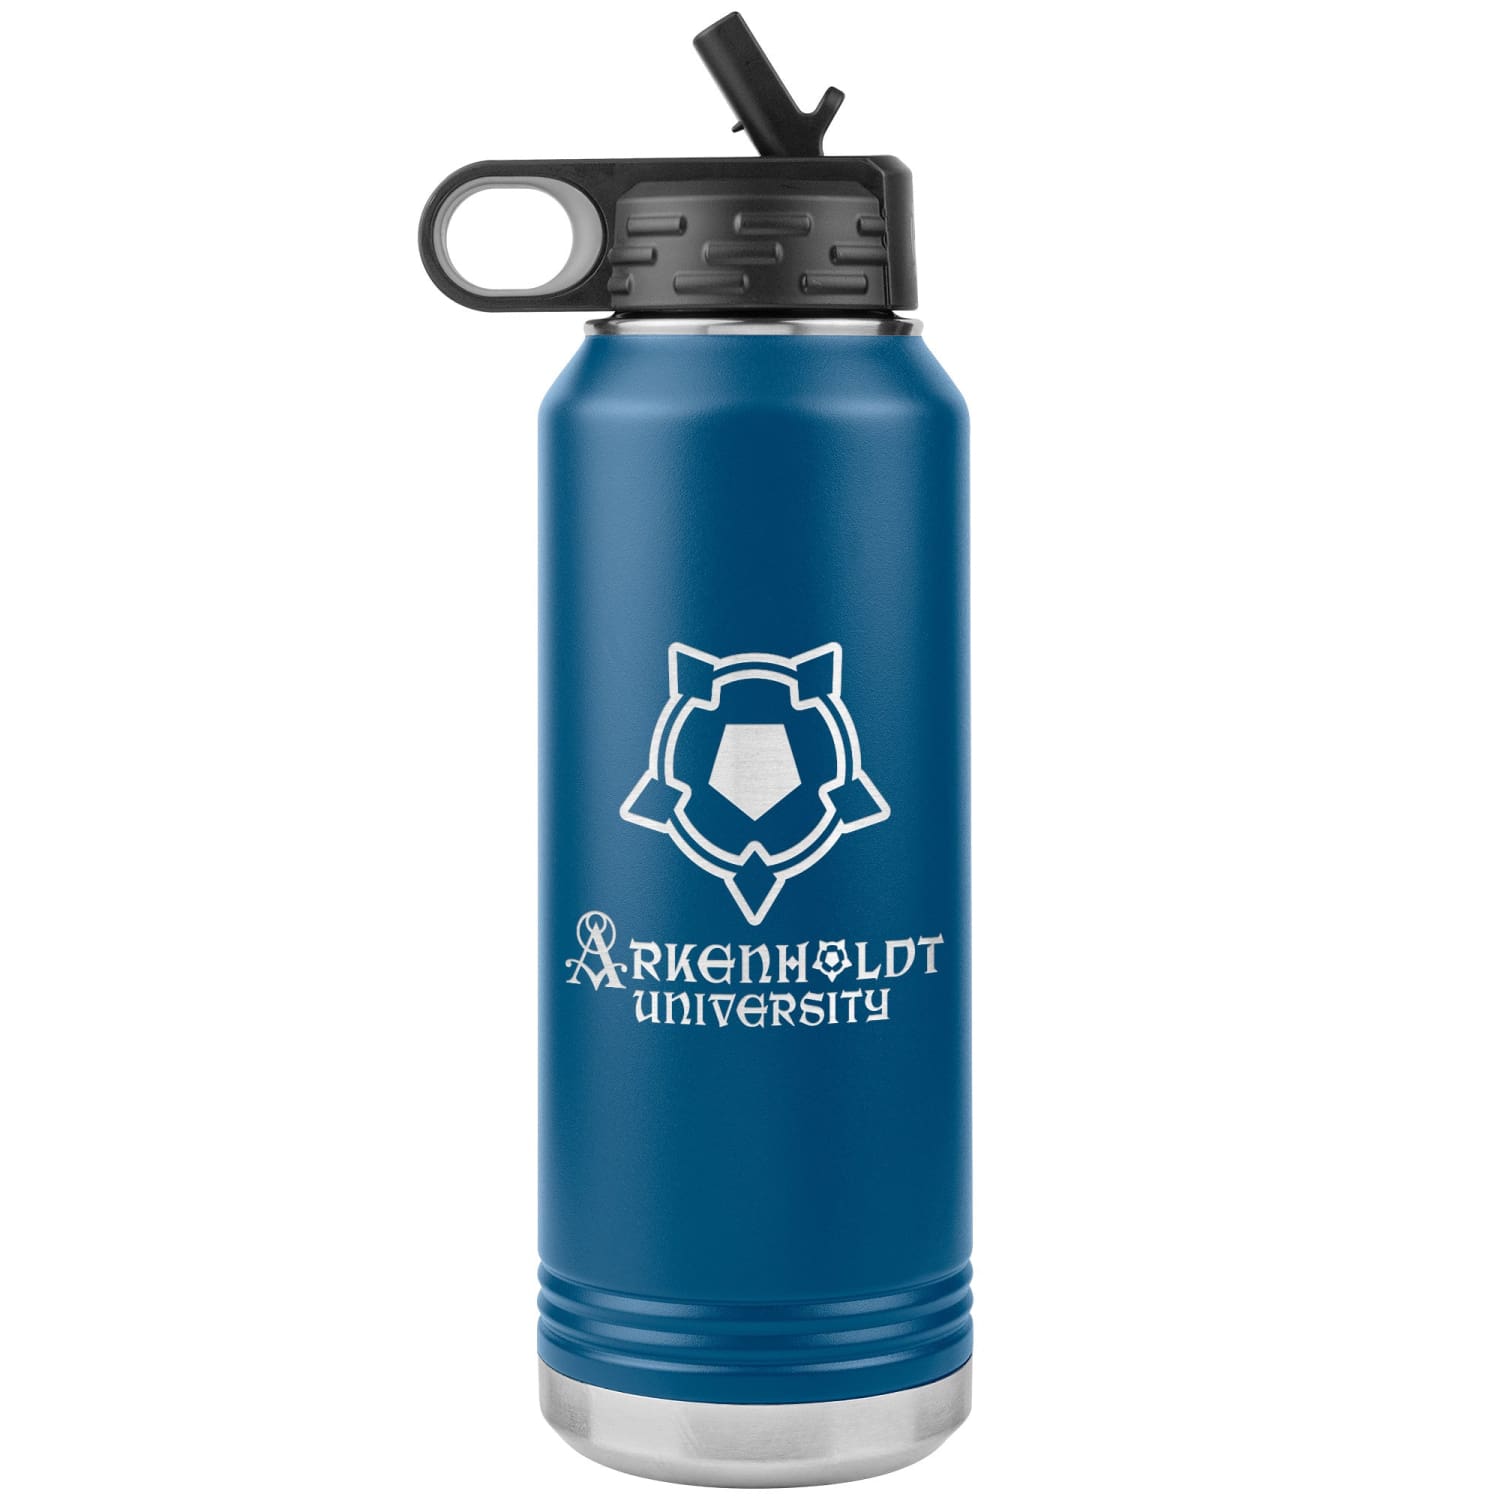 Arkenholdt Arkenstar 32oz Water Bottle Tumbler - Blue - Water Bottle